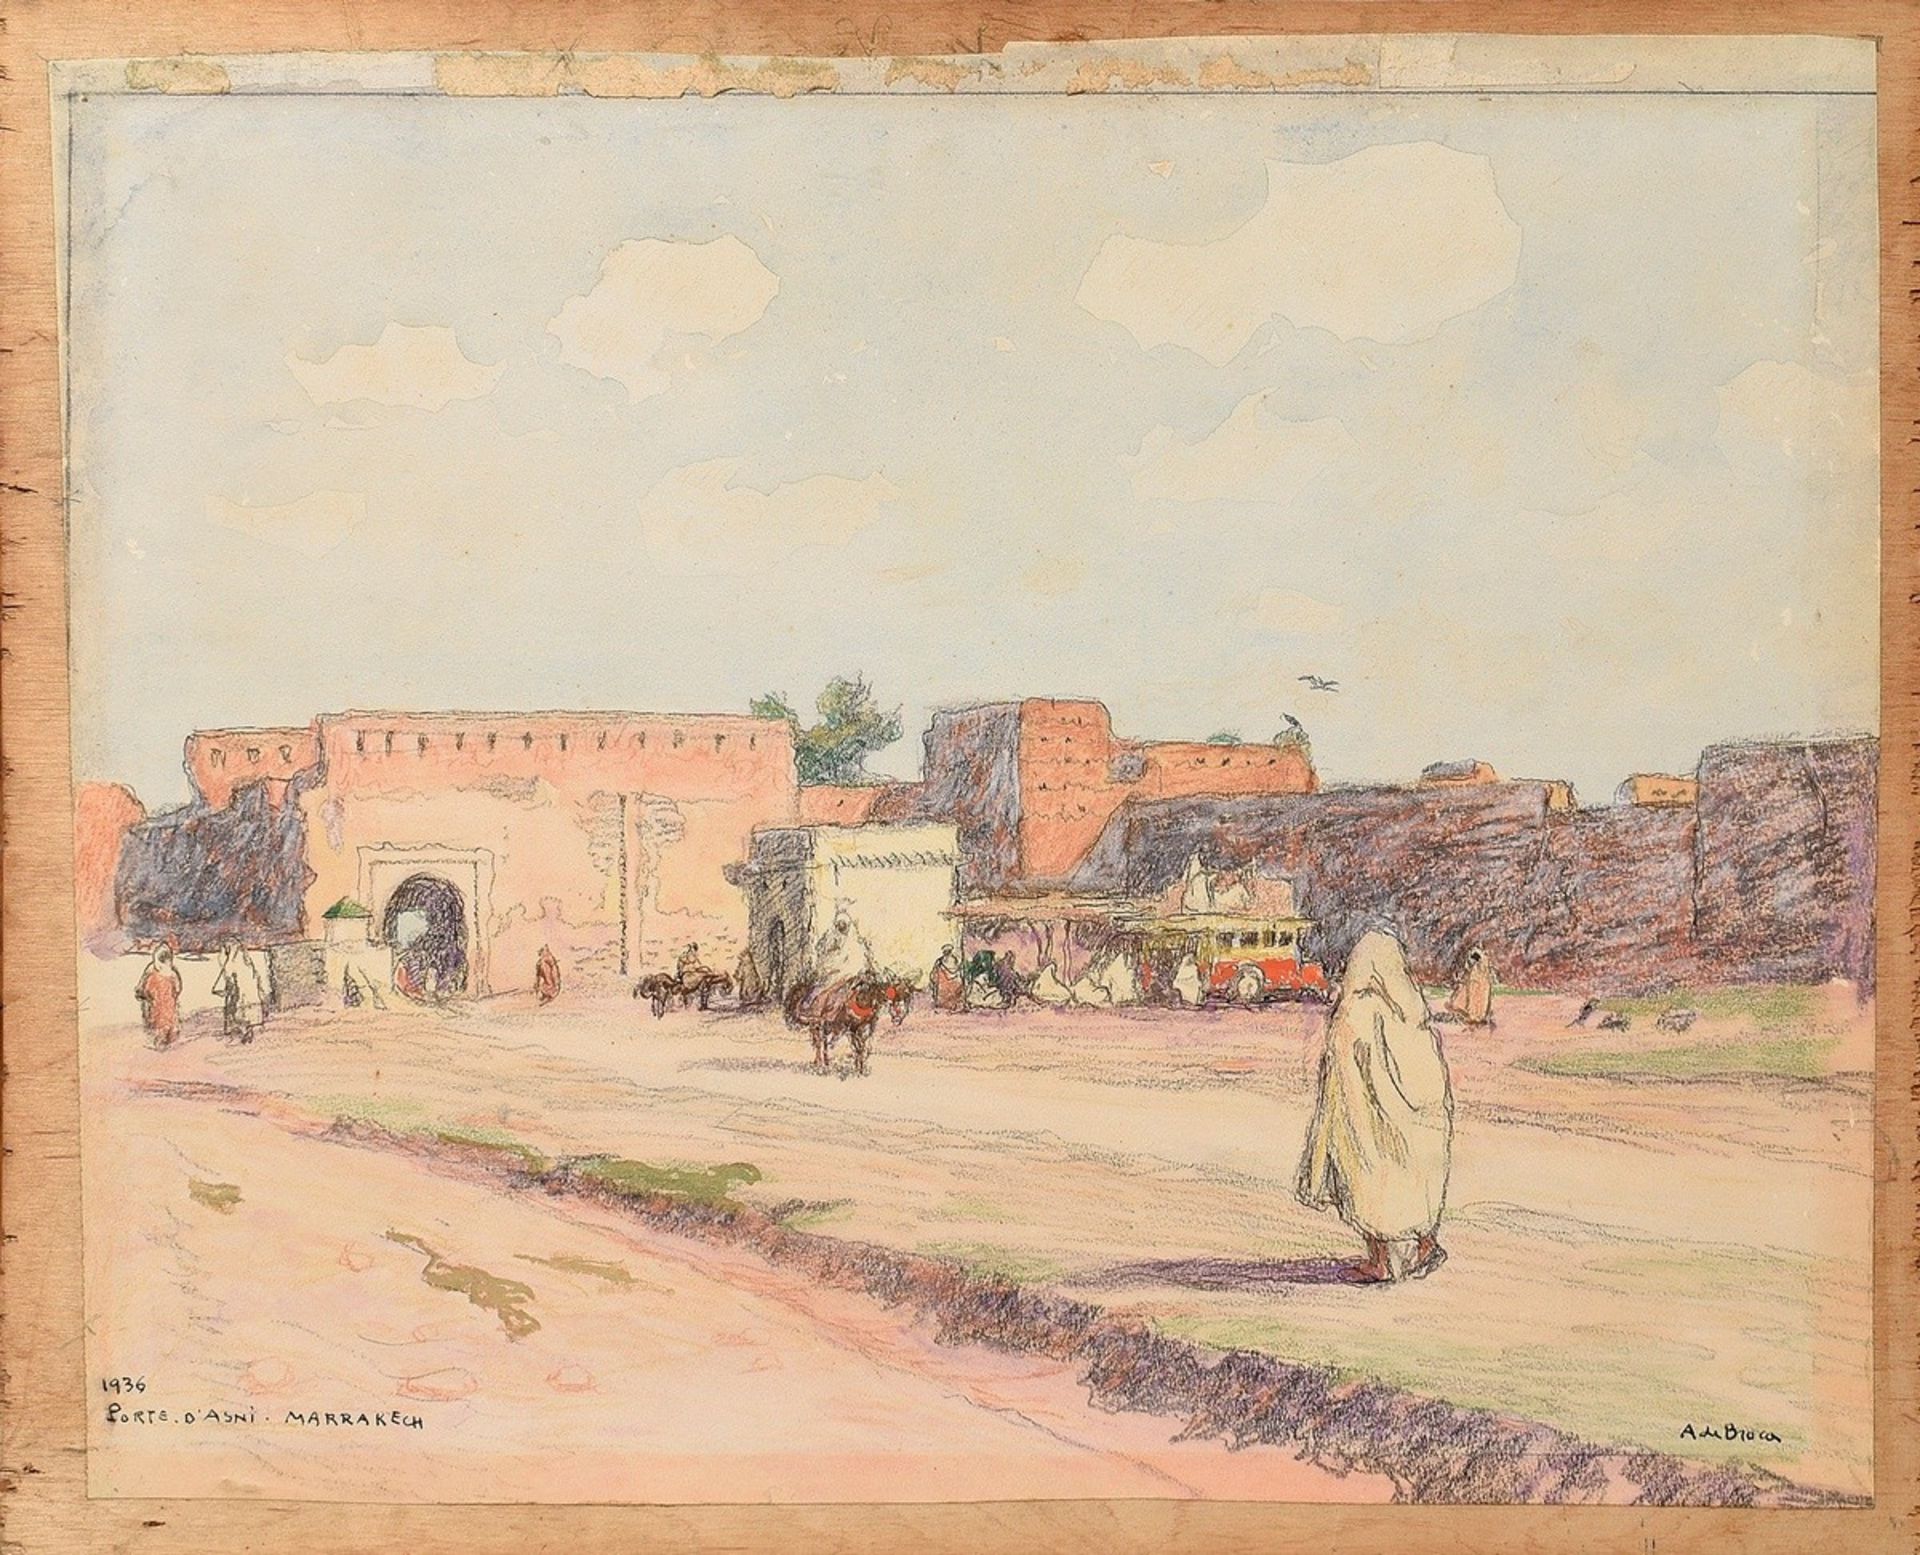 Broca, Alexis Louis de (1868-1948) "Porte D'Asni - Marrakech" 1936, watercolour/pastel crayon, pape - Image 6 of 9